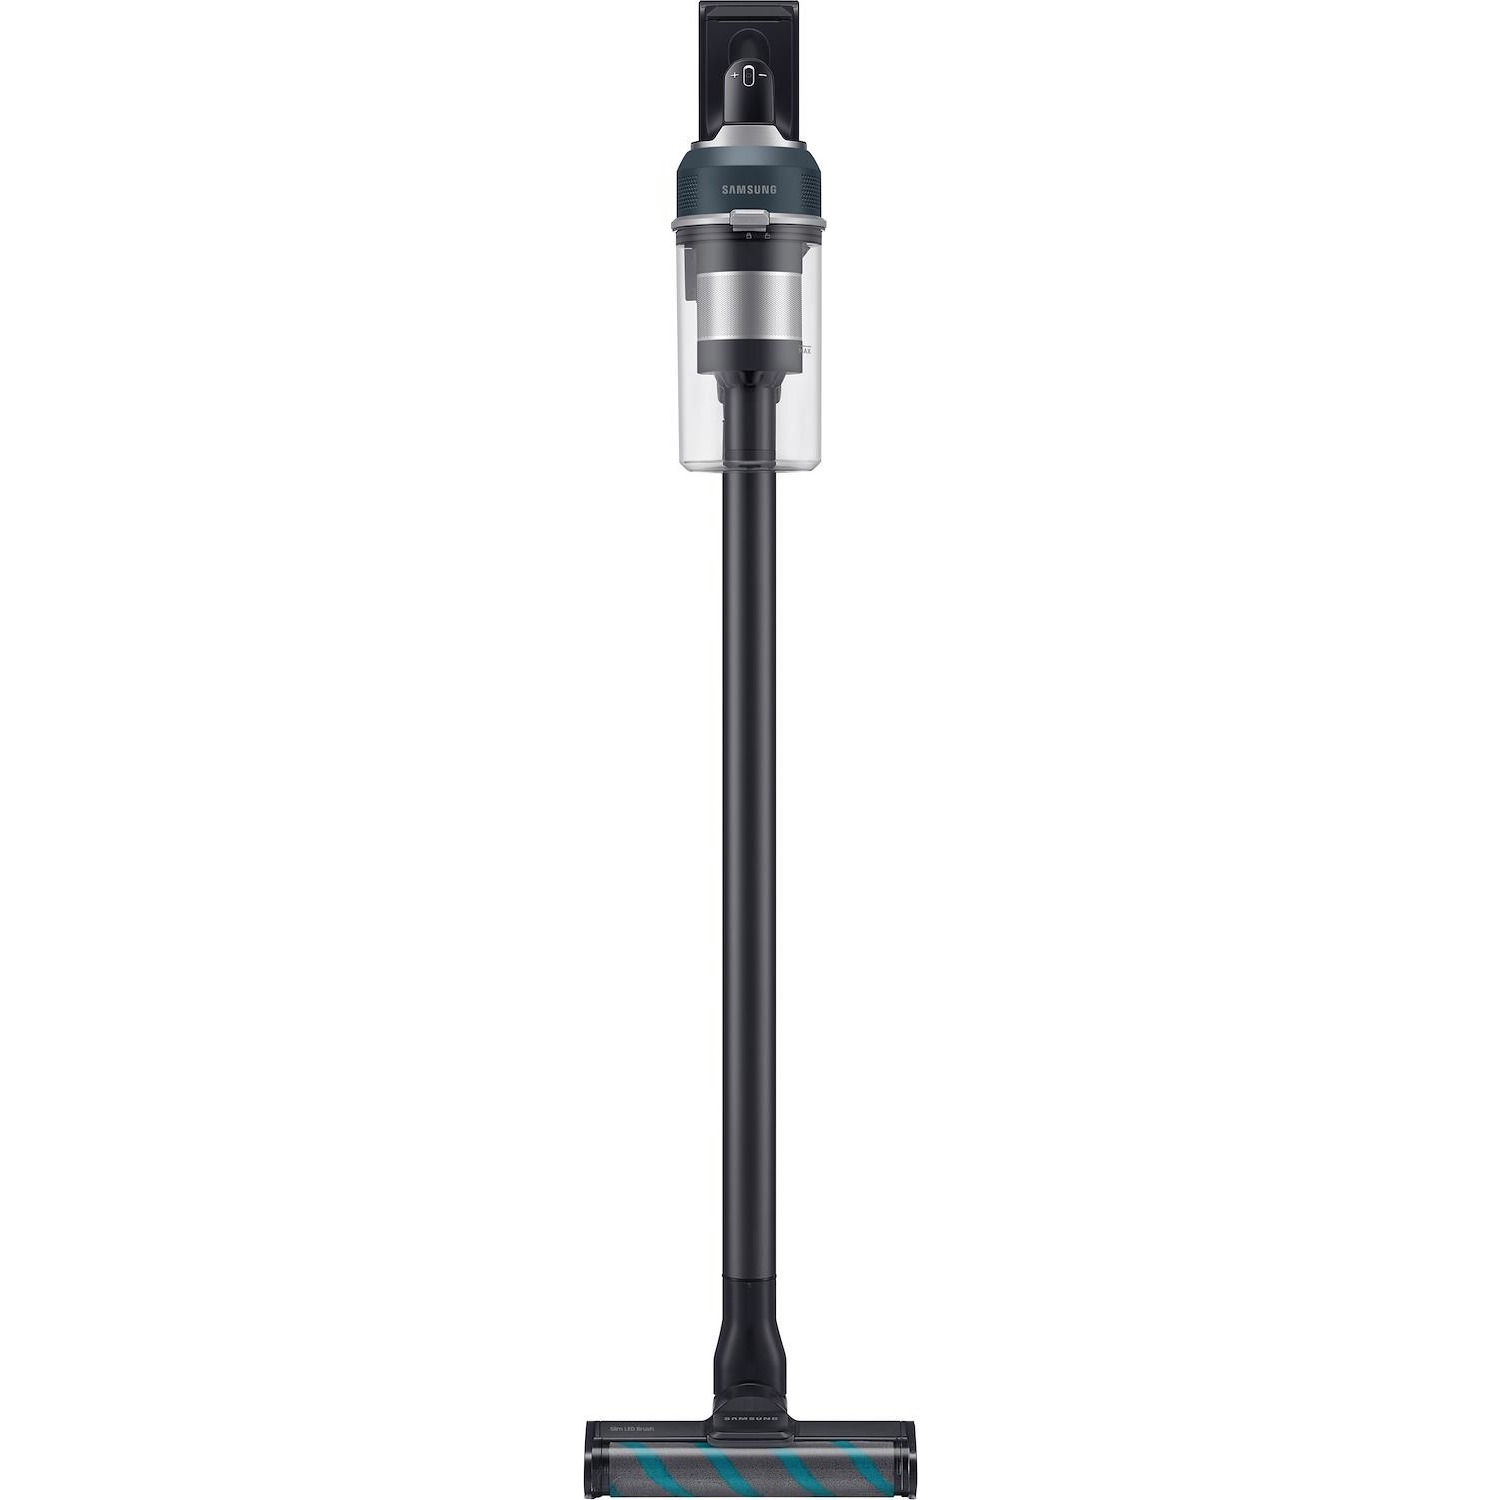 Immagine per Scopa elettrica ricaricabile Samsung Jet 85 Premium con spazzola lavapavimenti + spazzola pet da DIMOStore